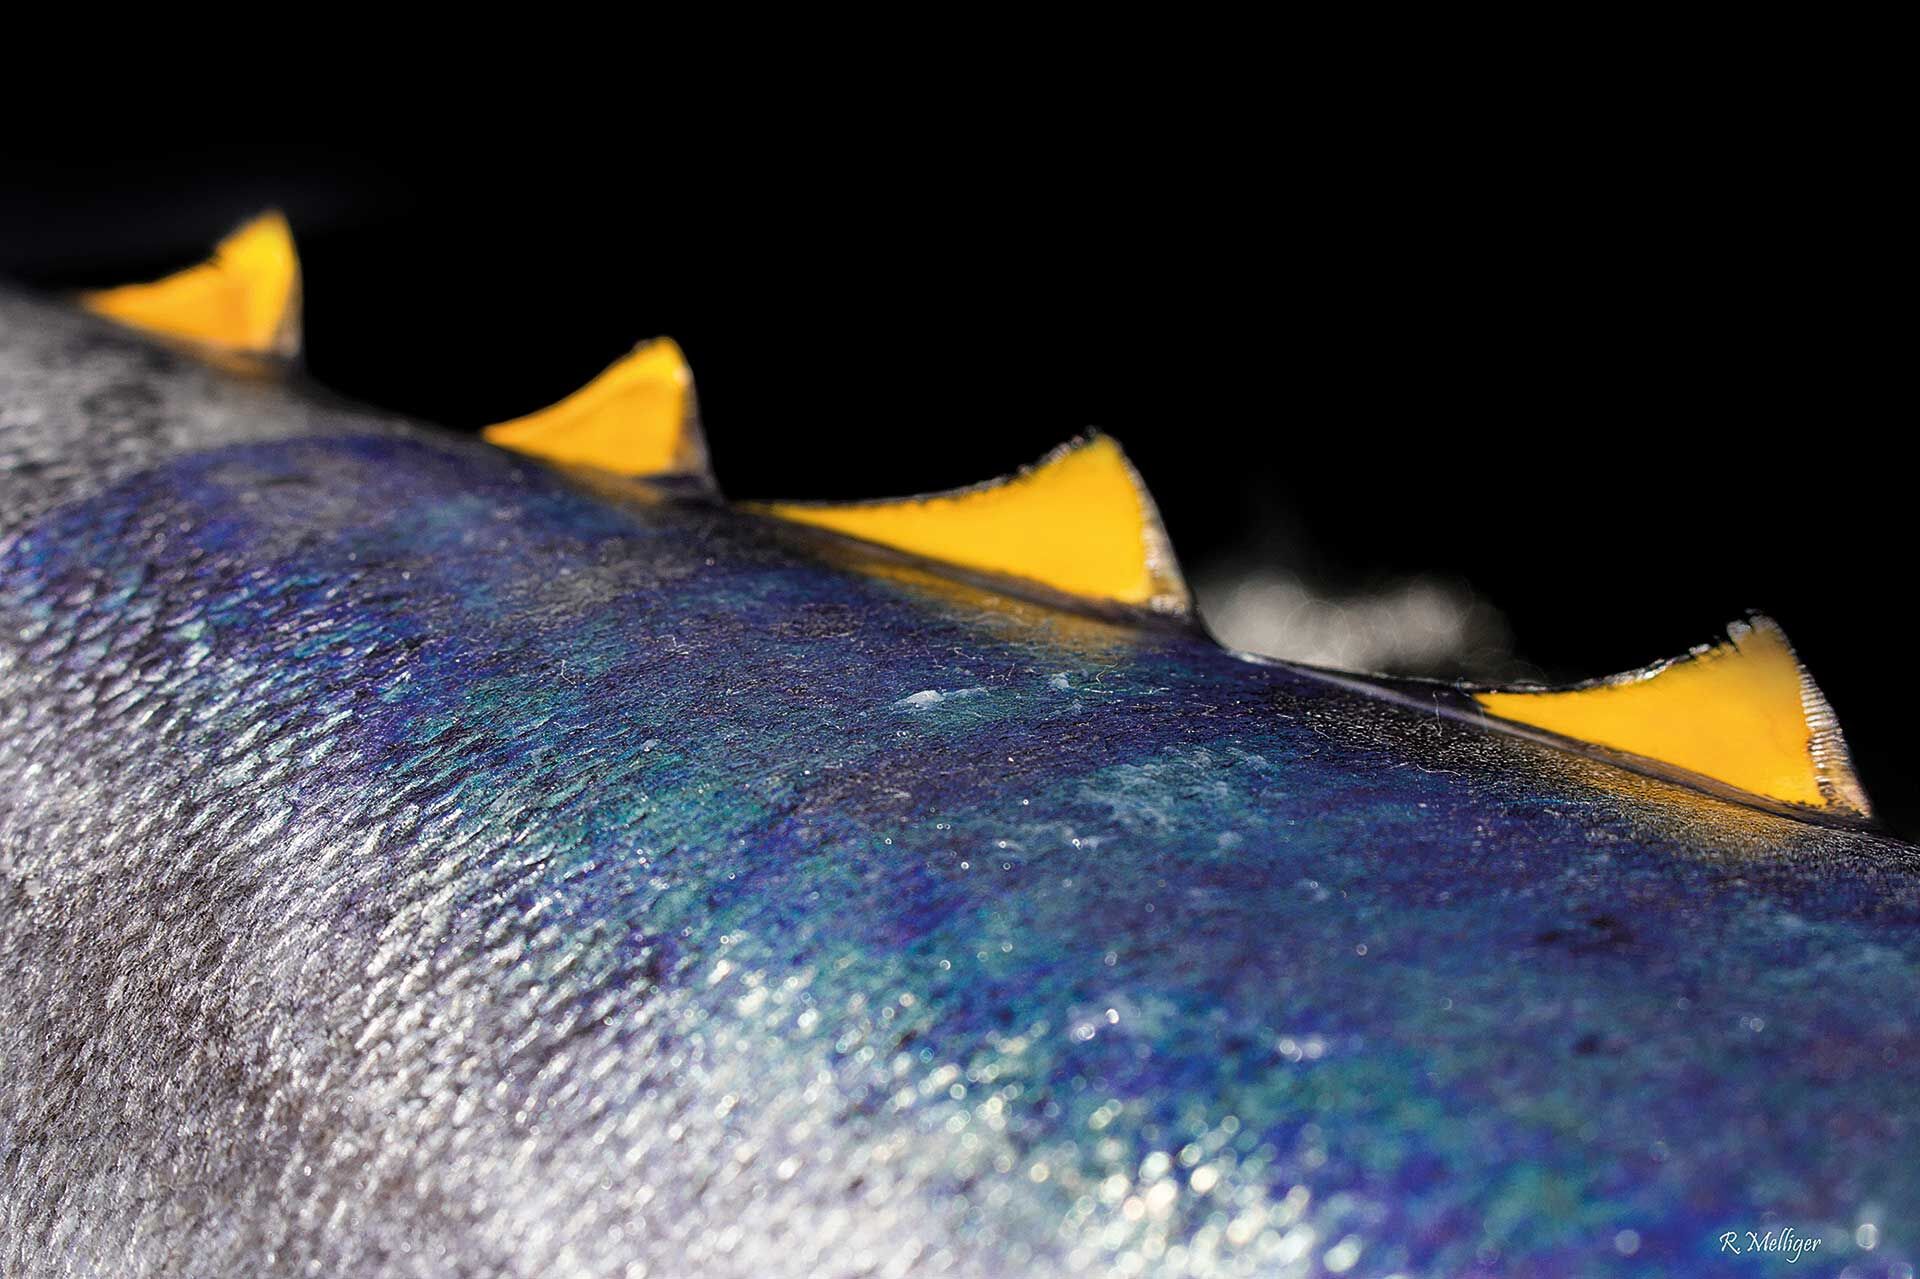  Die kleinen gelben Flossen, welche sich entlang der Schwanzwurzel befinden, können von den Thunfischen wie kleine Paddel gesteuert werden, um agile Richtungswechsel bei der Jagd zu vollziehen. © Robin Melliger  